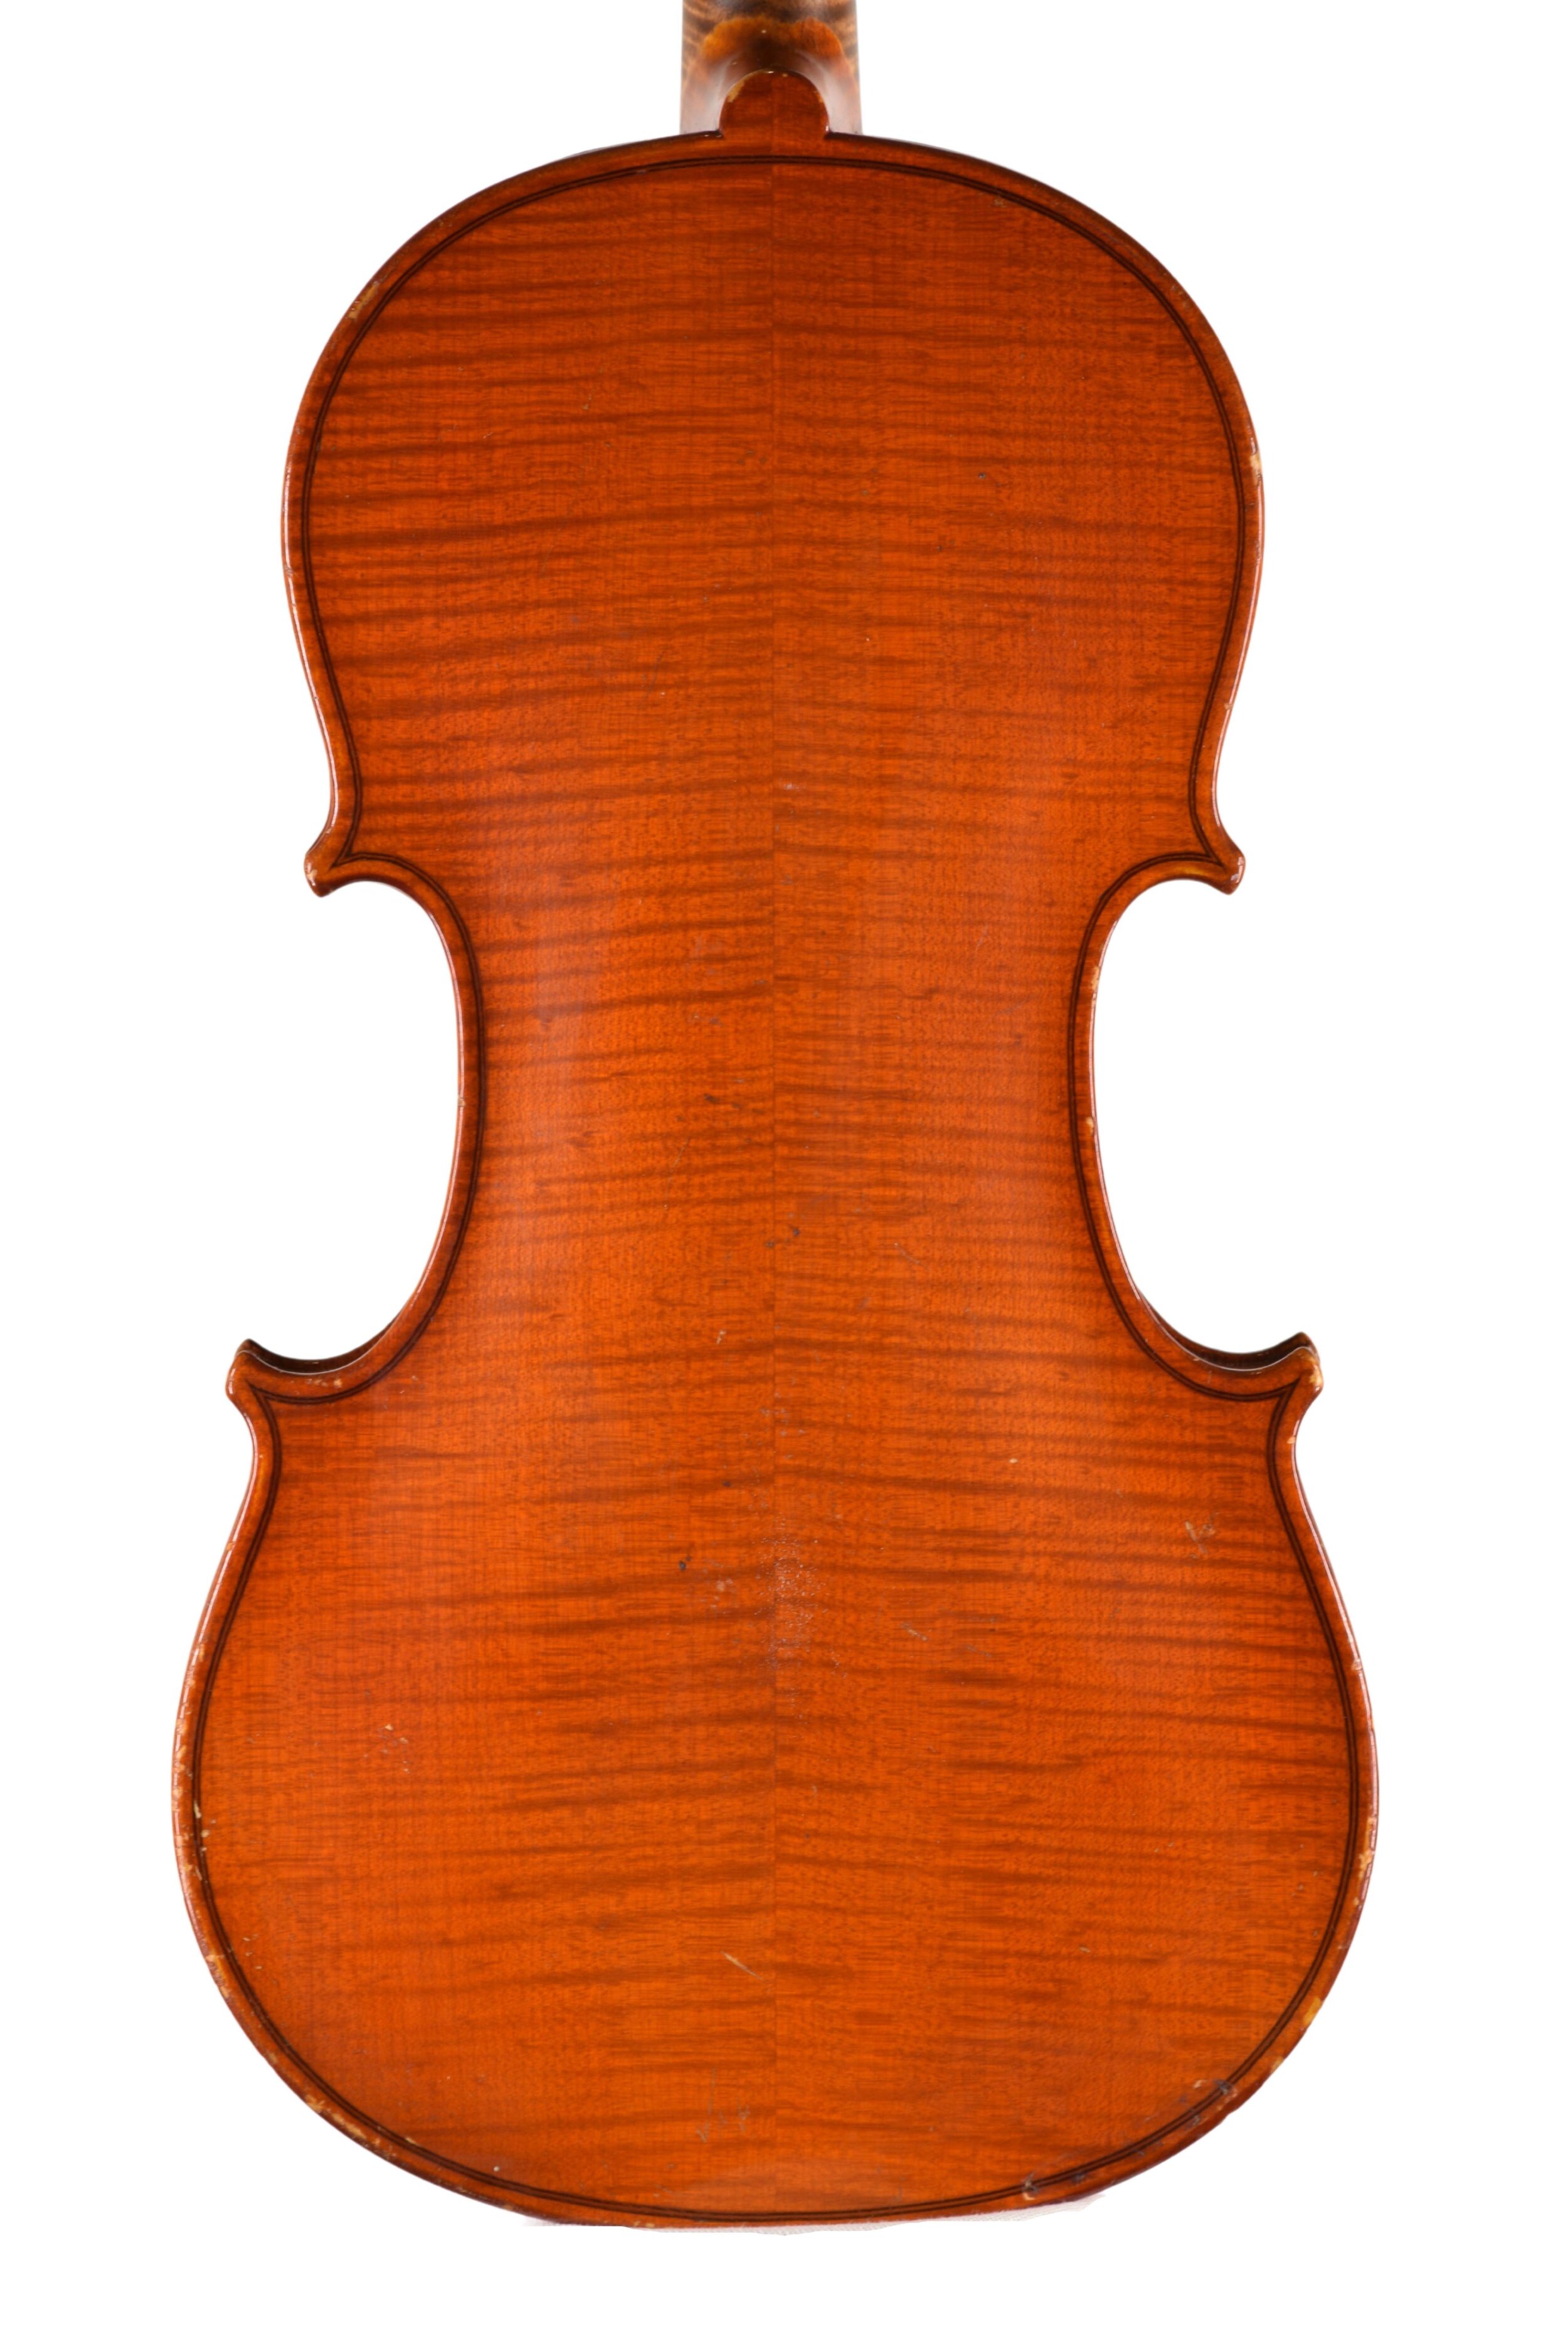 Antique violin Germany back